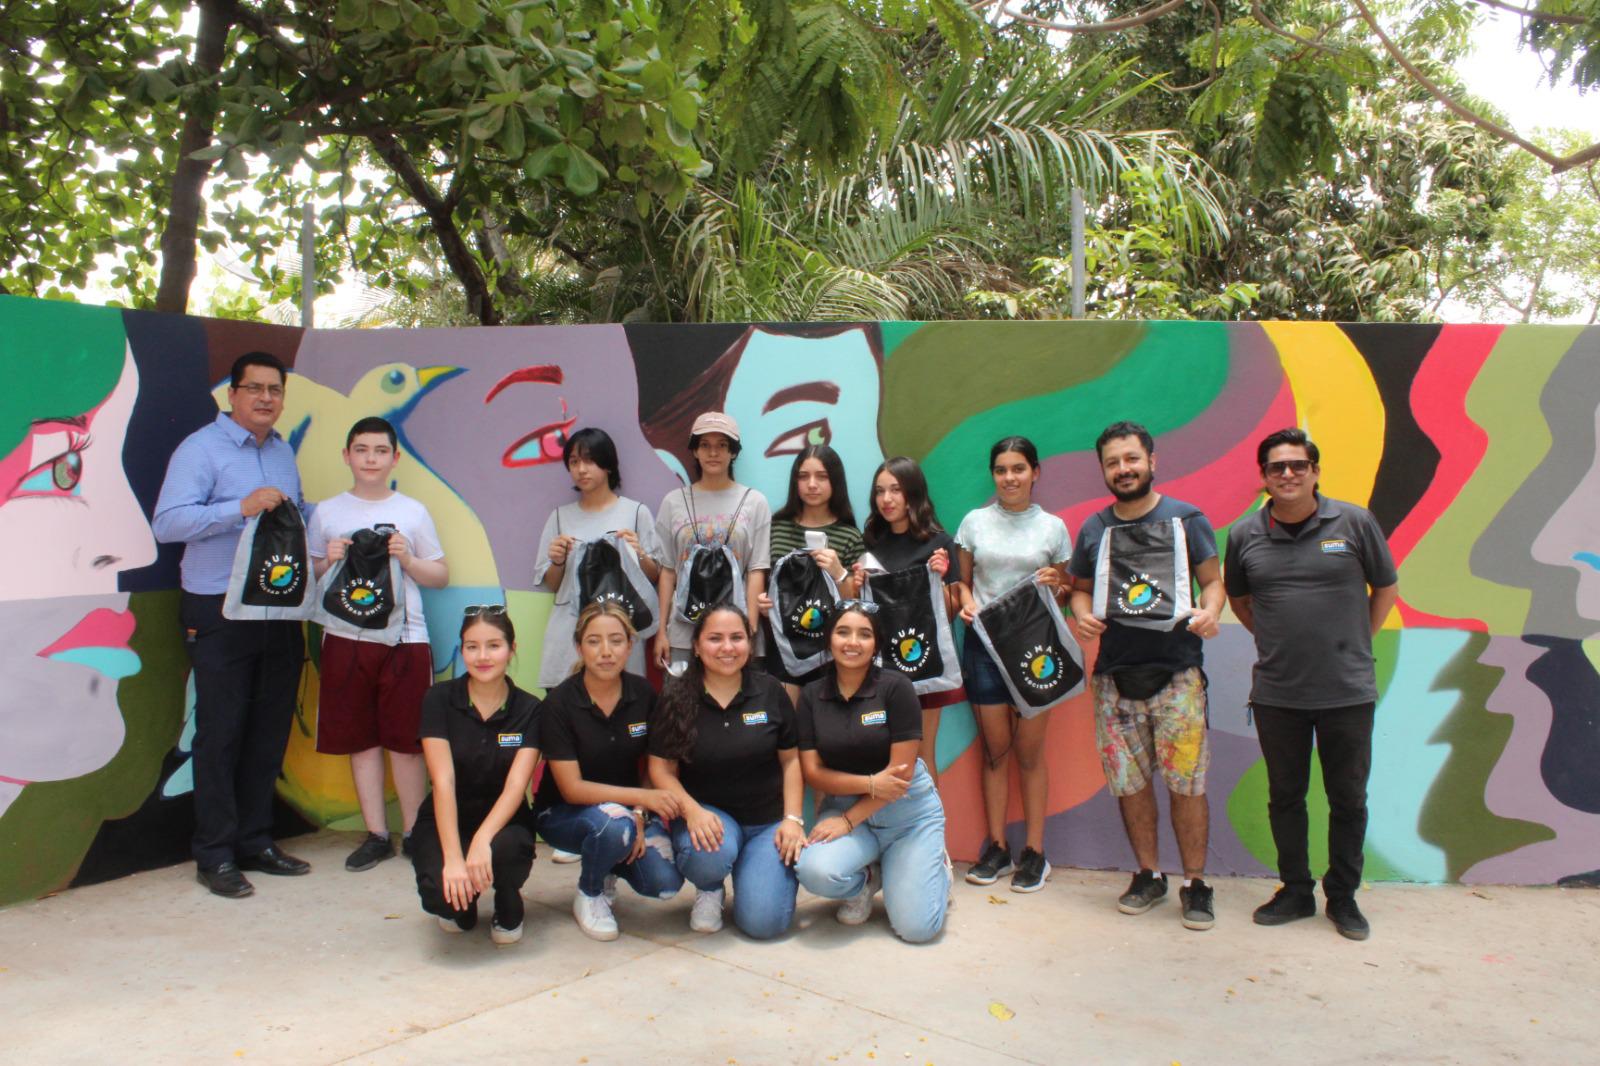 $!Estudiantes de secundaria en Culiacán dejan su legado en murales